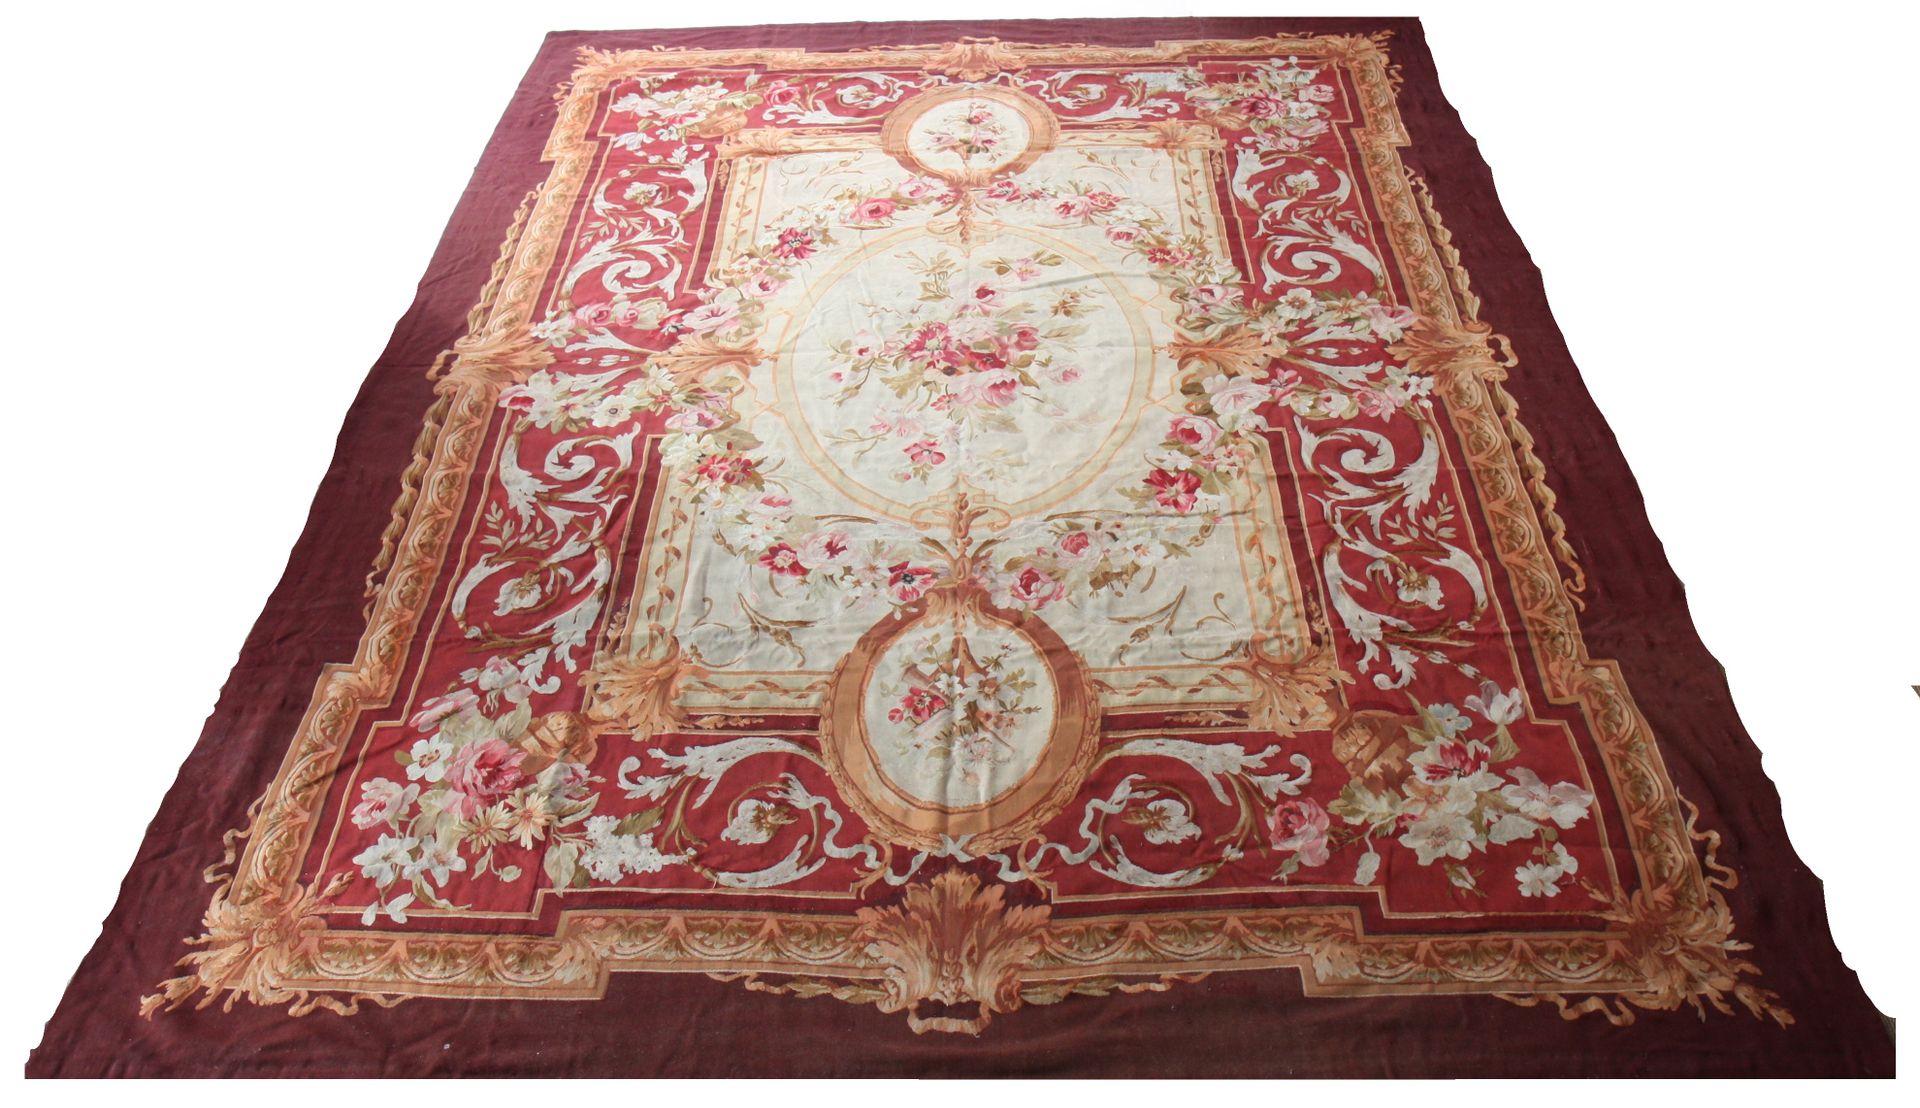 Null 杰出的奥布森地毯 19世纪

奶油色背景上有三个中央奖章，装饰有花束

以红色和金色为背景的花束和阿拉伯式花纹为框架

波尔多色的边框

19世纪

&hellip;